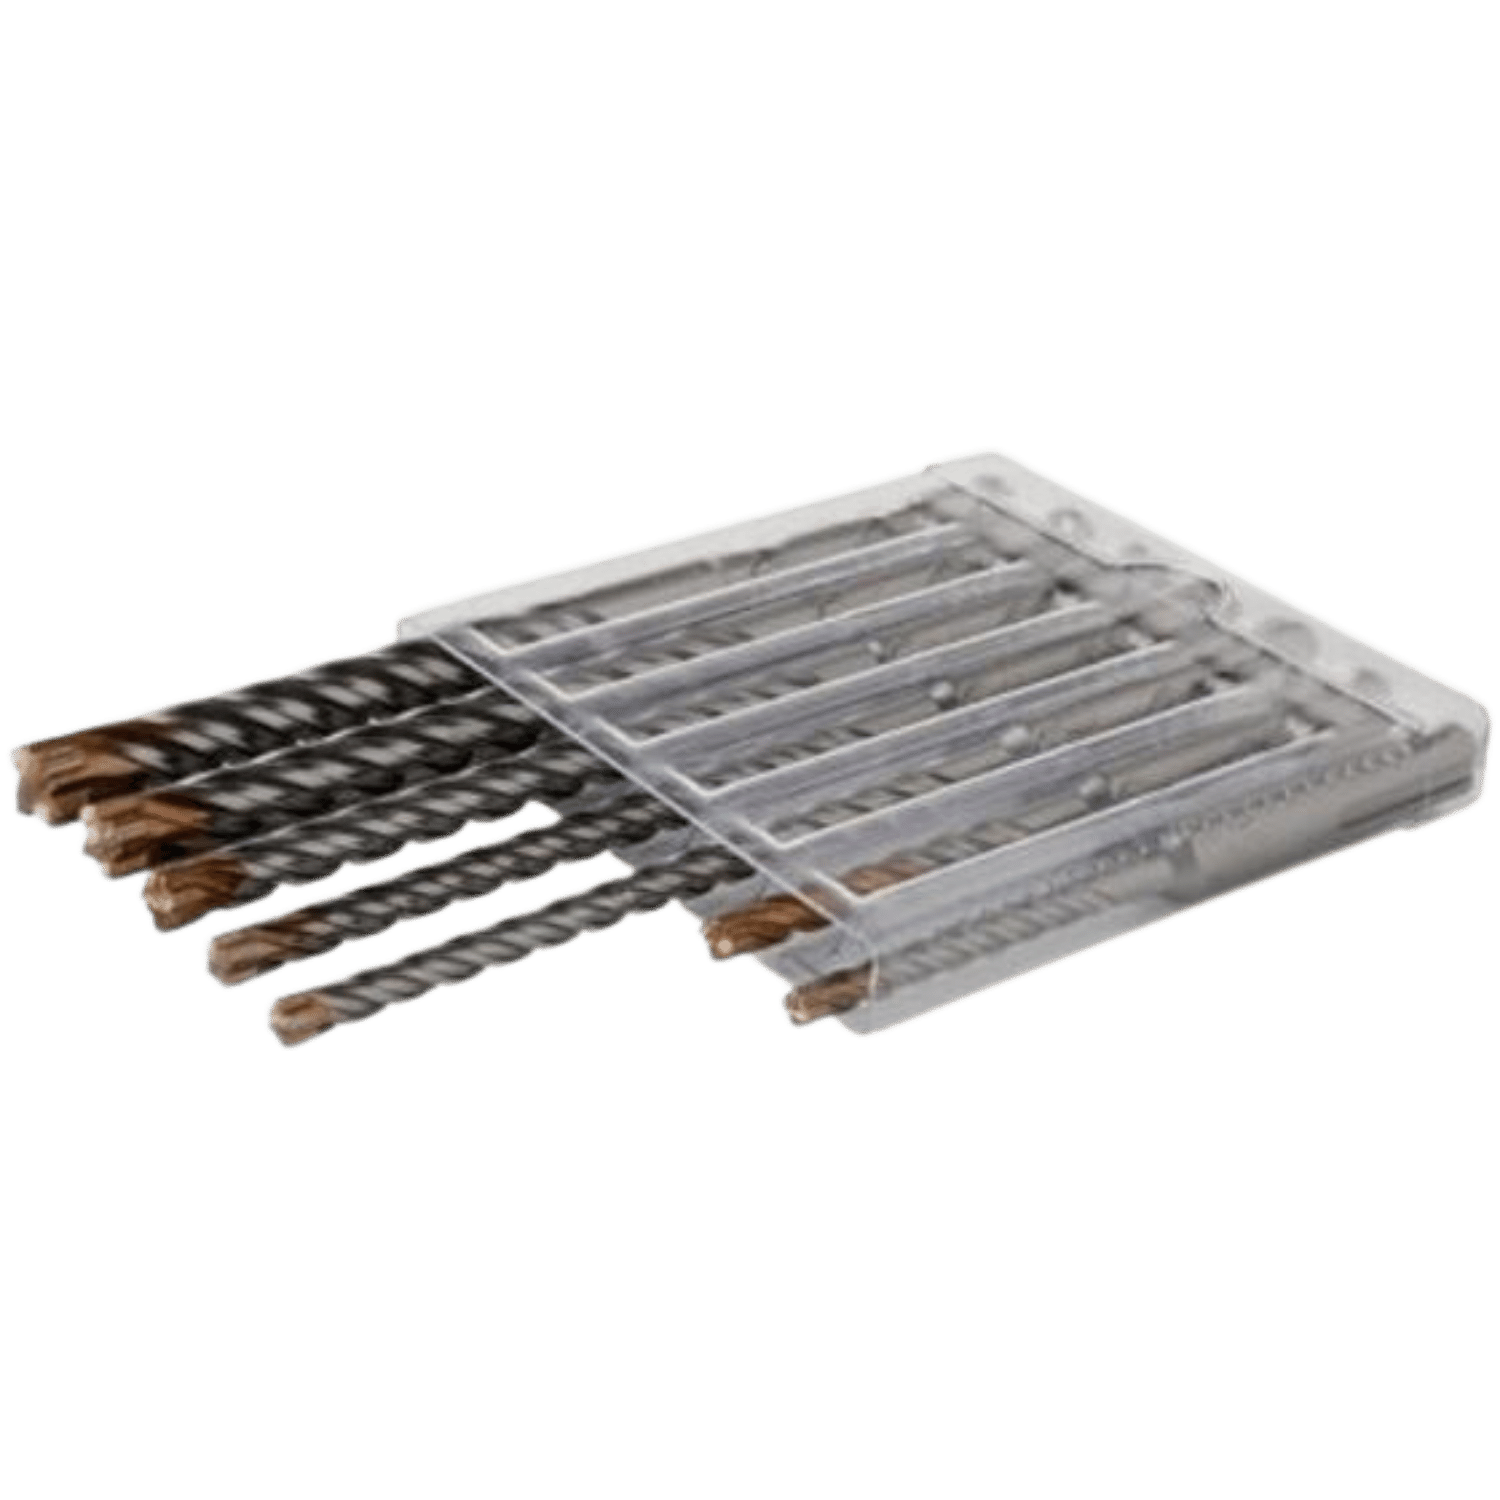 STROXX SDS+ Borenset: Zeven zilveren boorbitjes met 4 snijkanten, variërend in maat van 5 tot 12 mm, georganiseerd in een robuuste koffer.